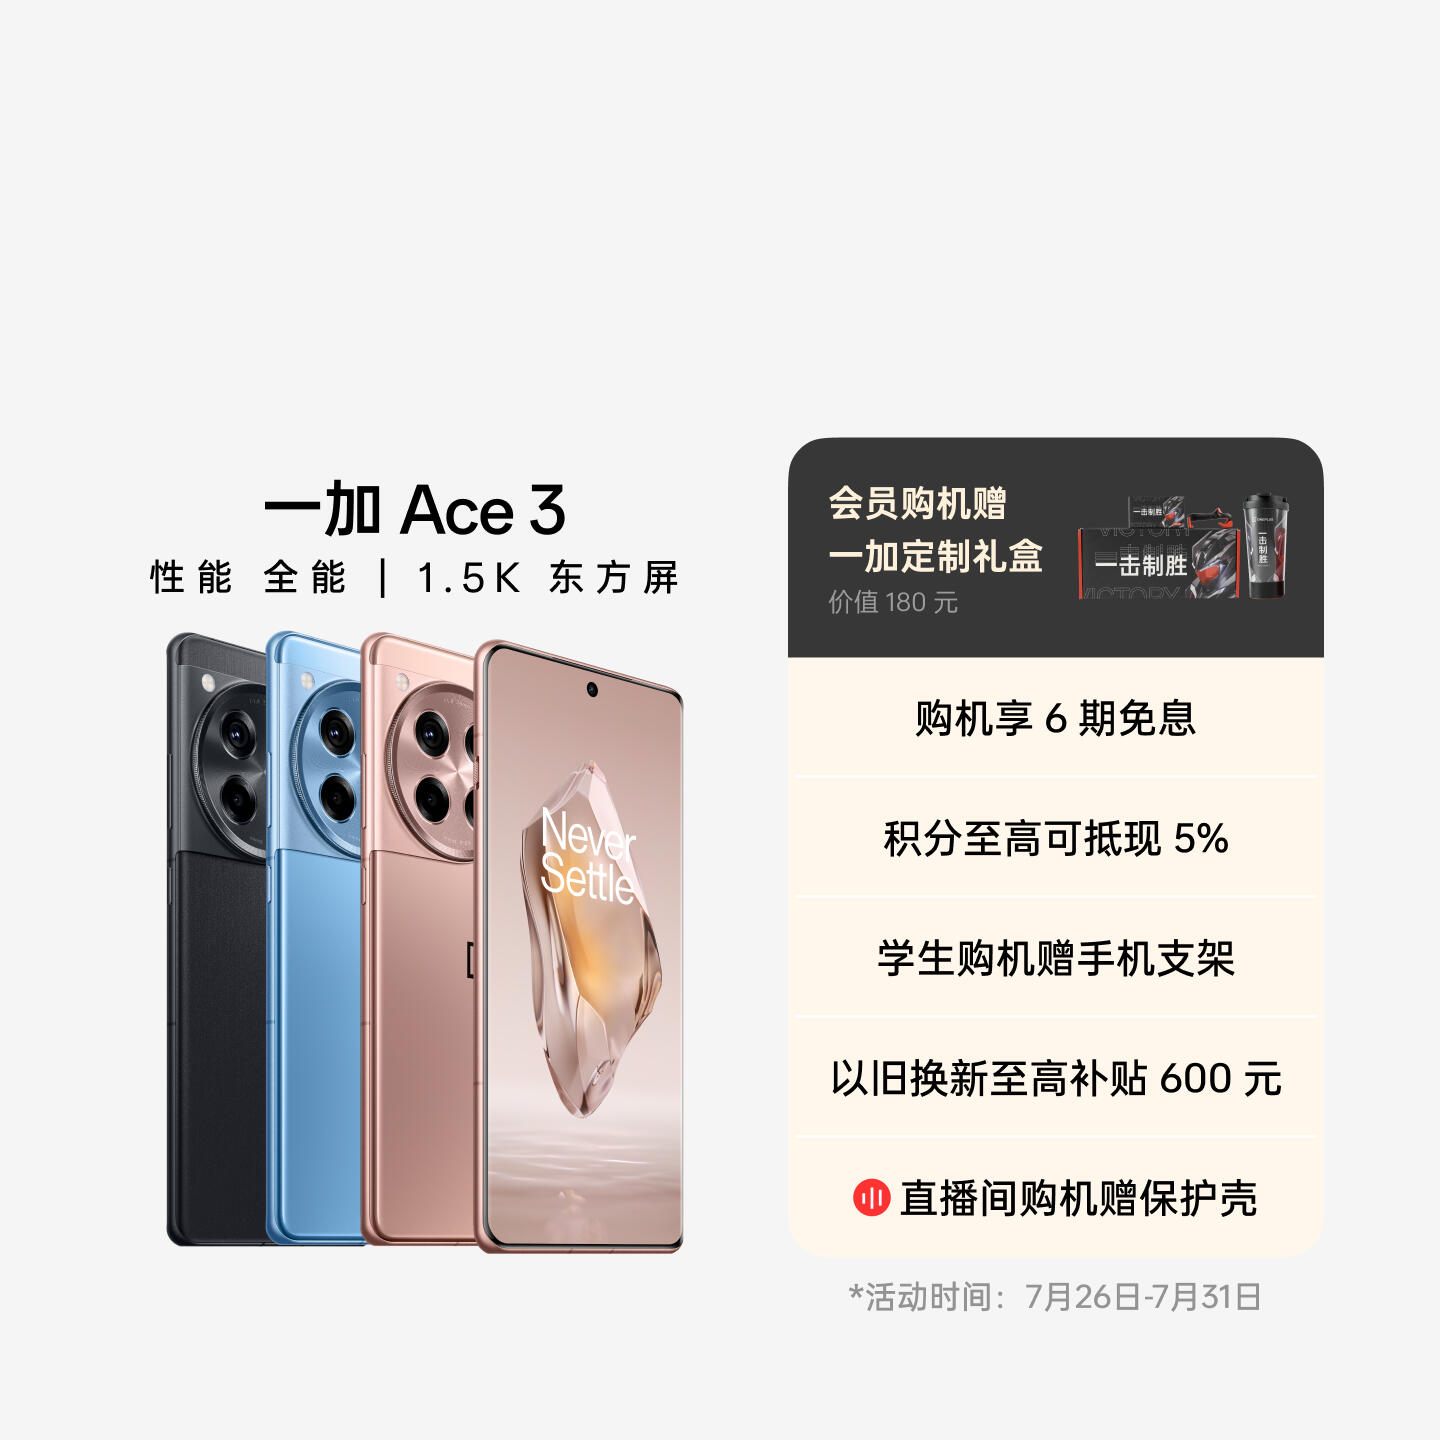 一加 Ace 3 AI手机 星辰黑 16GB+512GB 官方标配